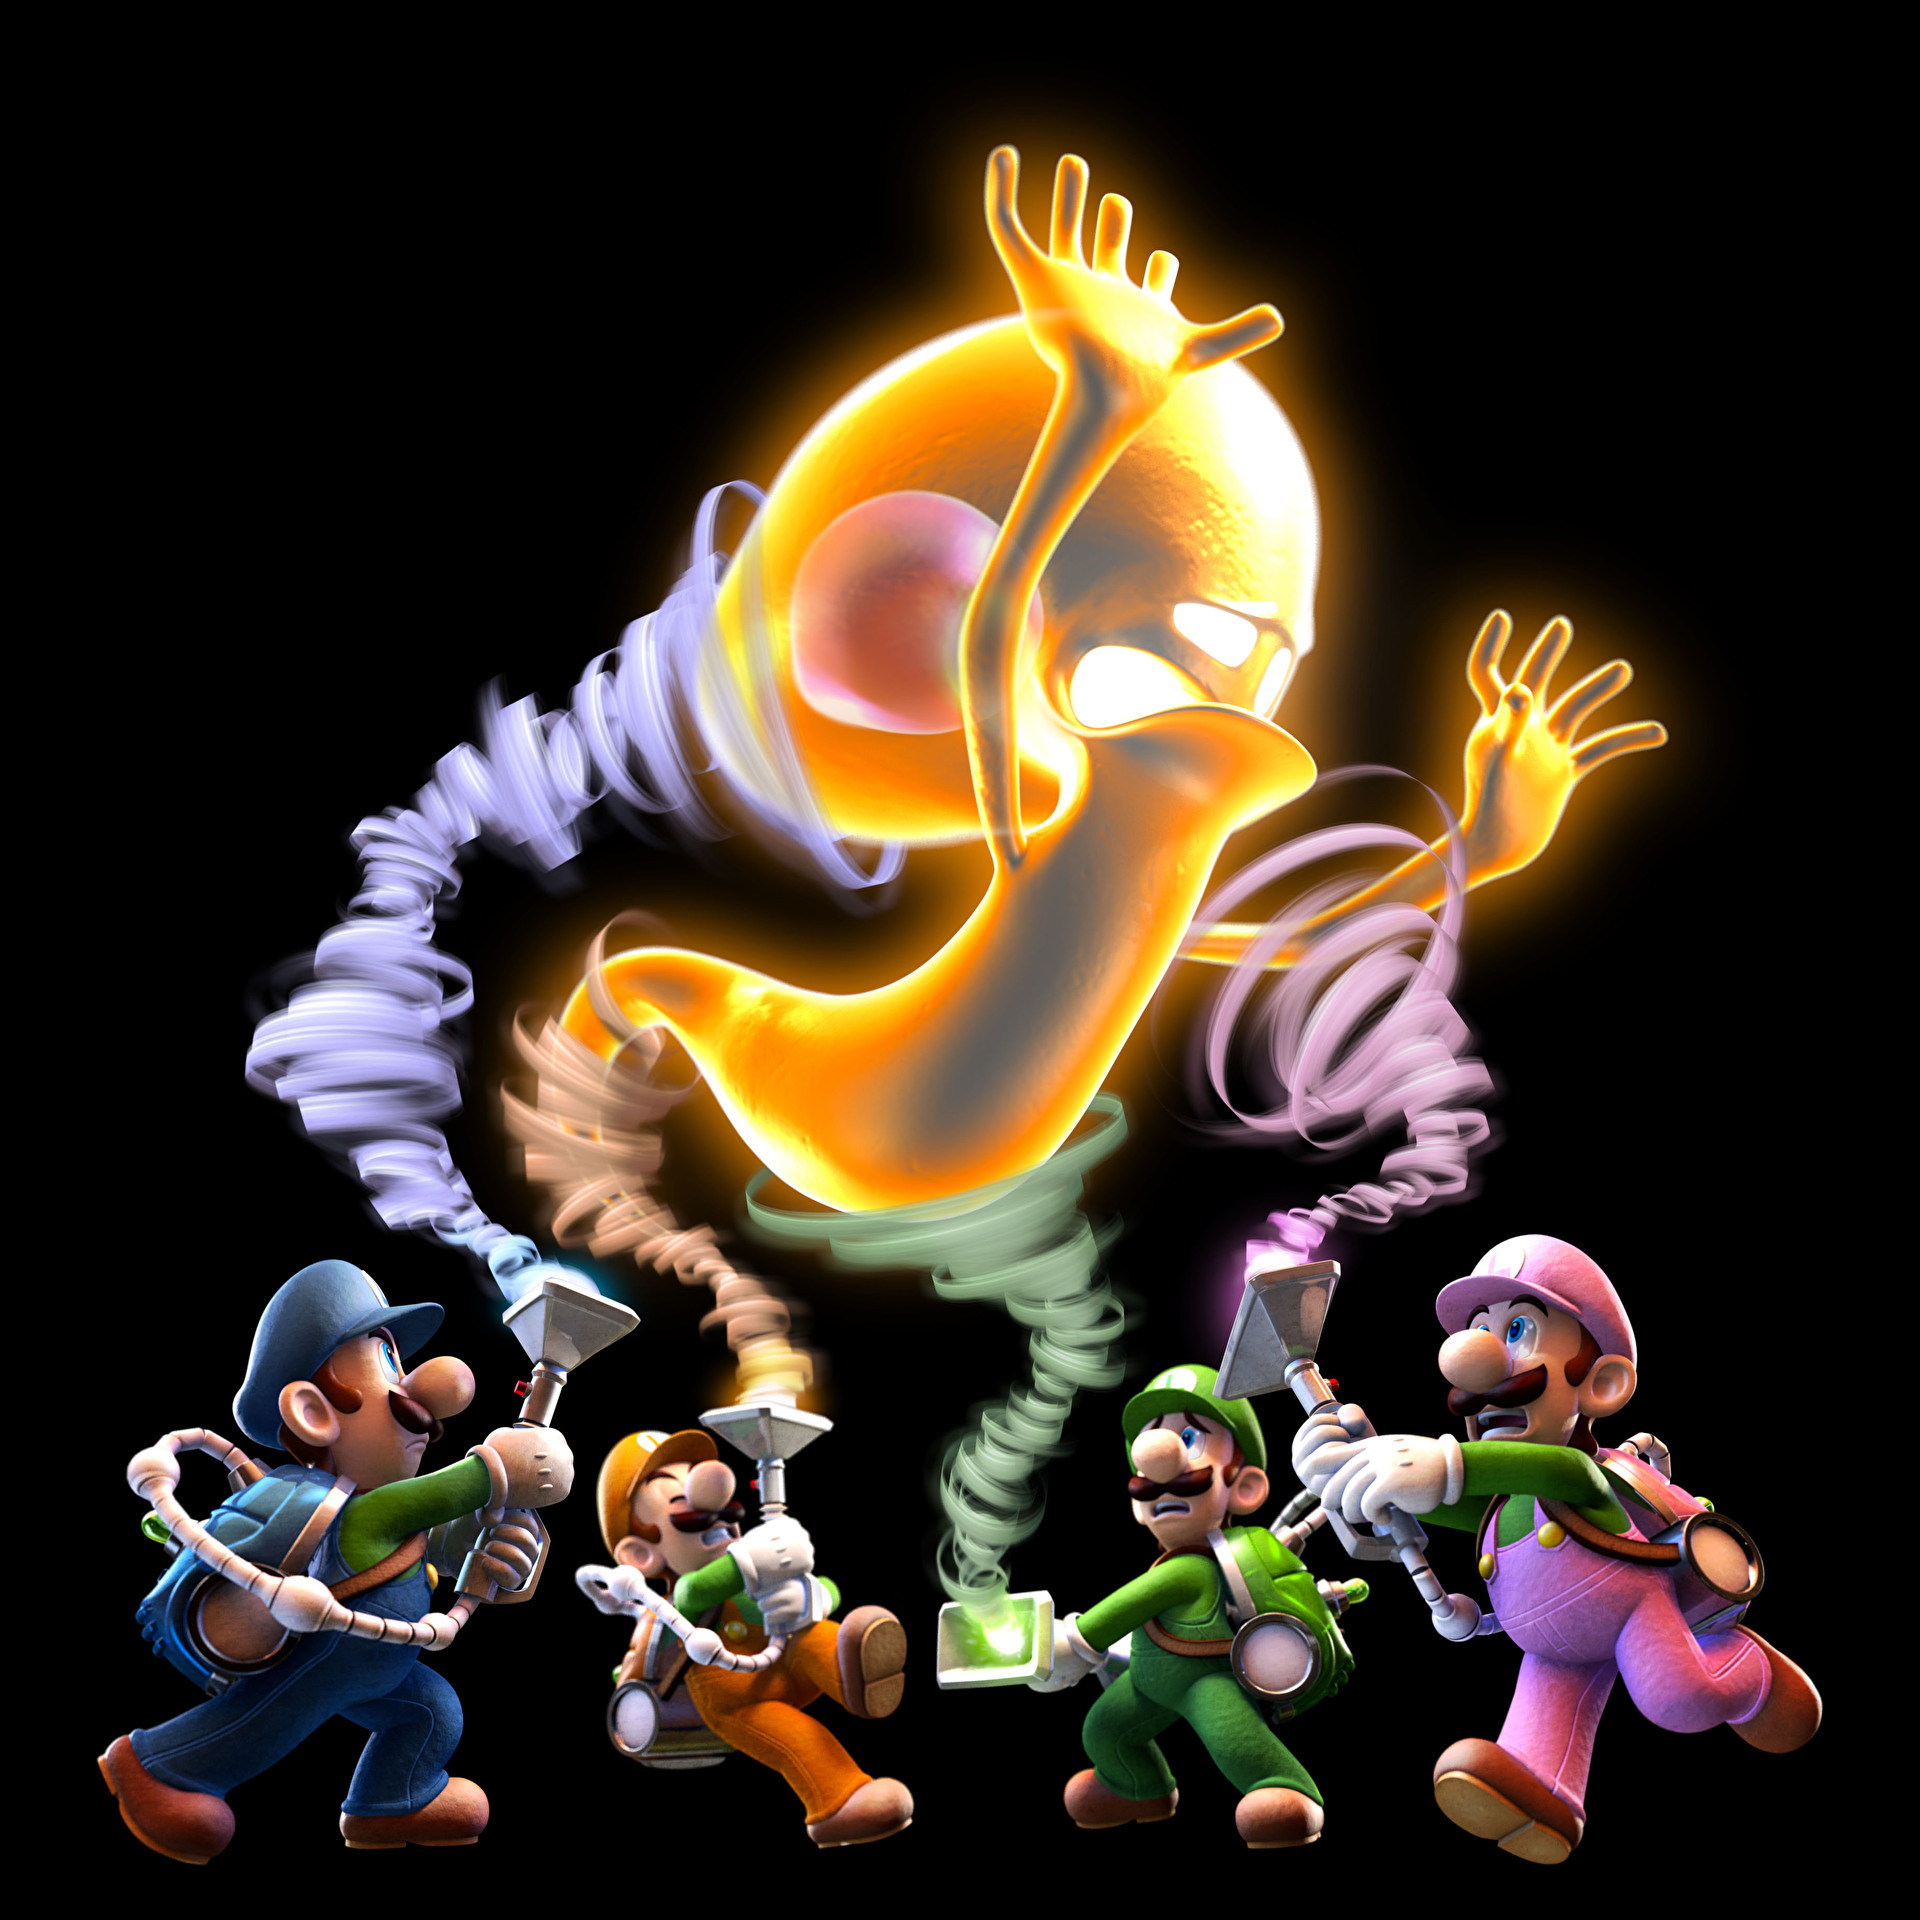 Luigis mansion dark moon multiplayer